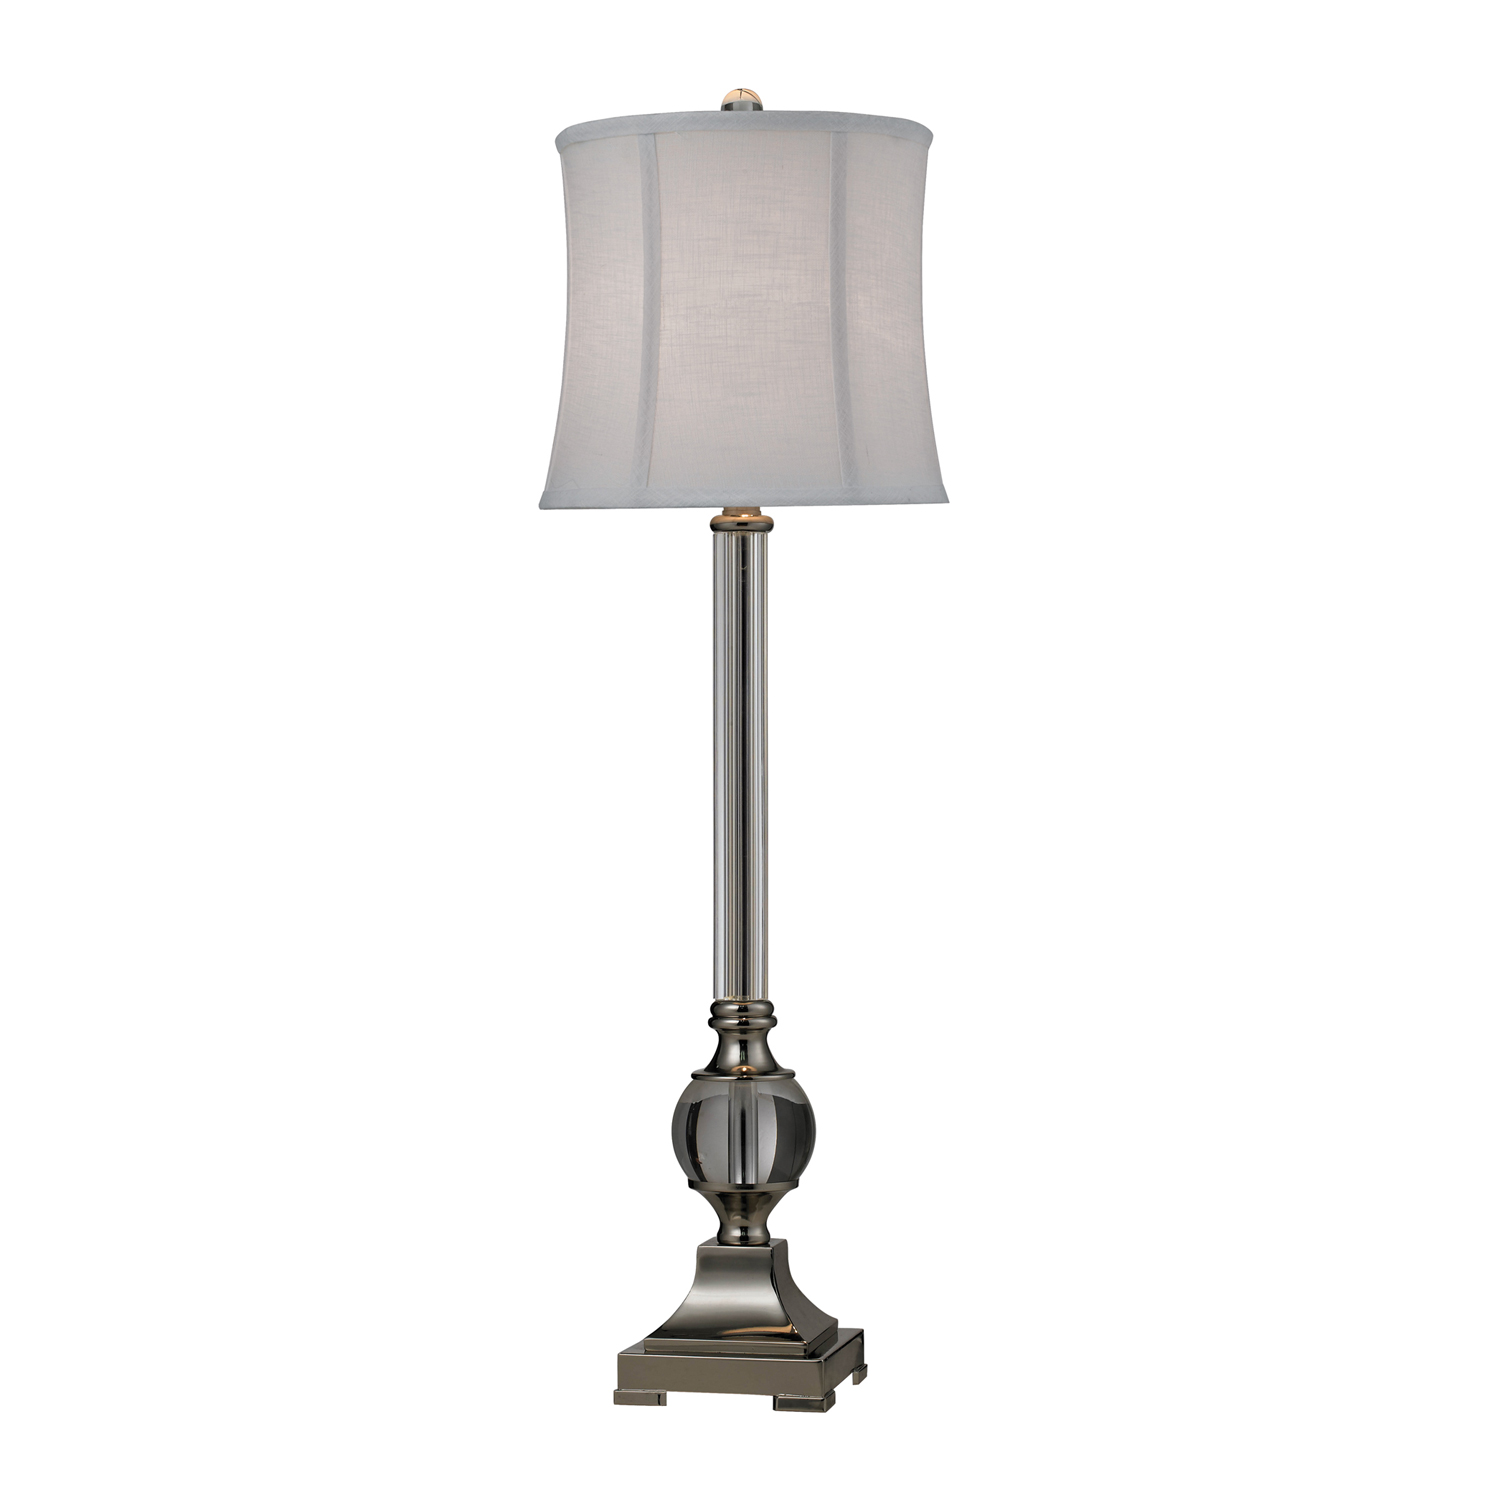 Elk Lighting D2309 Corvallis Table Lamp - Clear / Polished Nickel